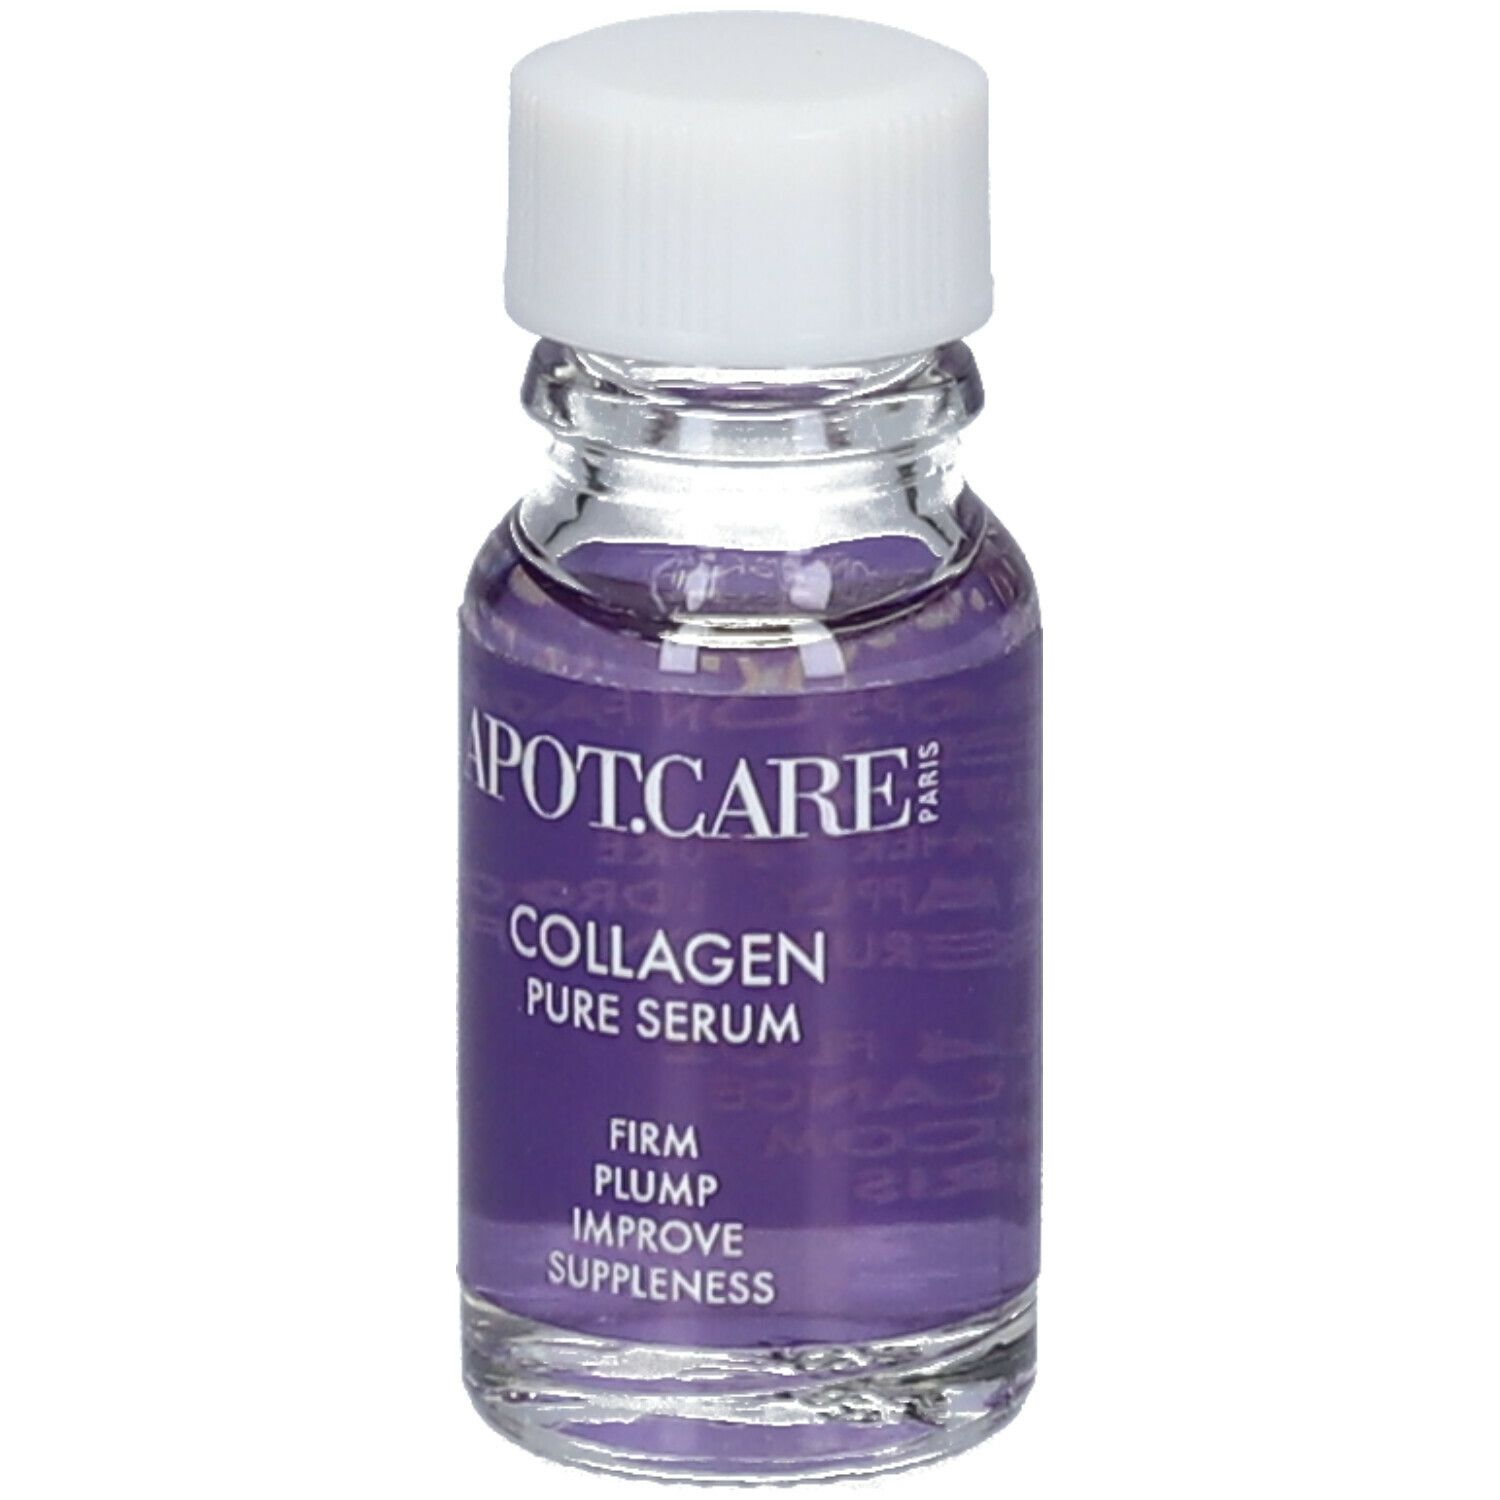 APOT.CARE Collagen Pure Serum